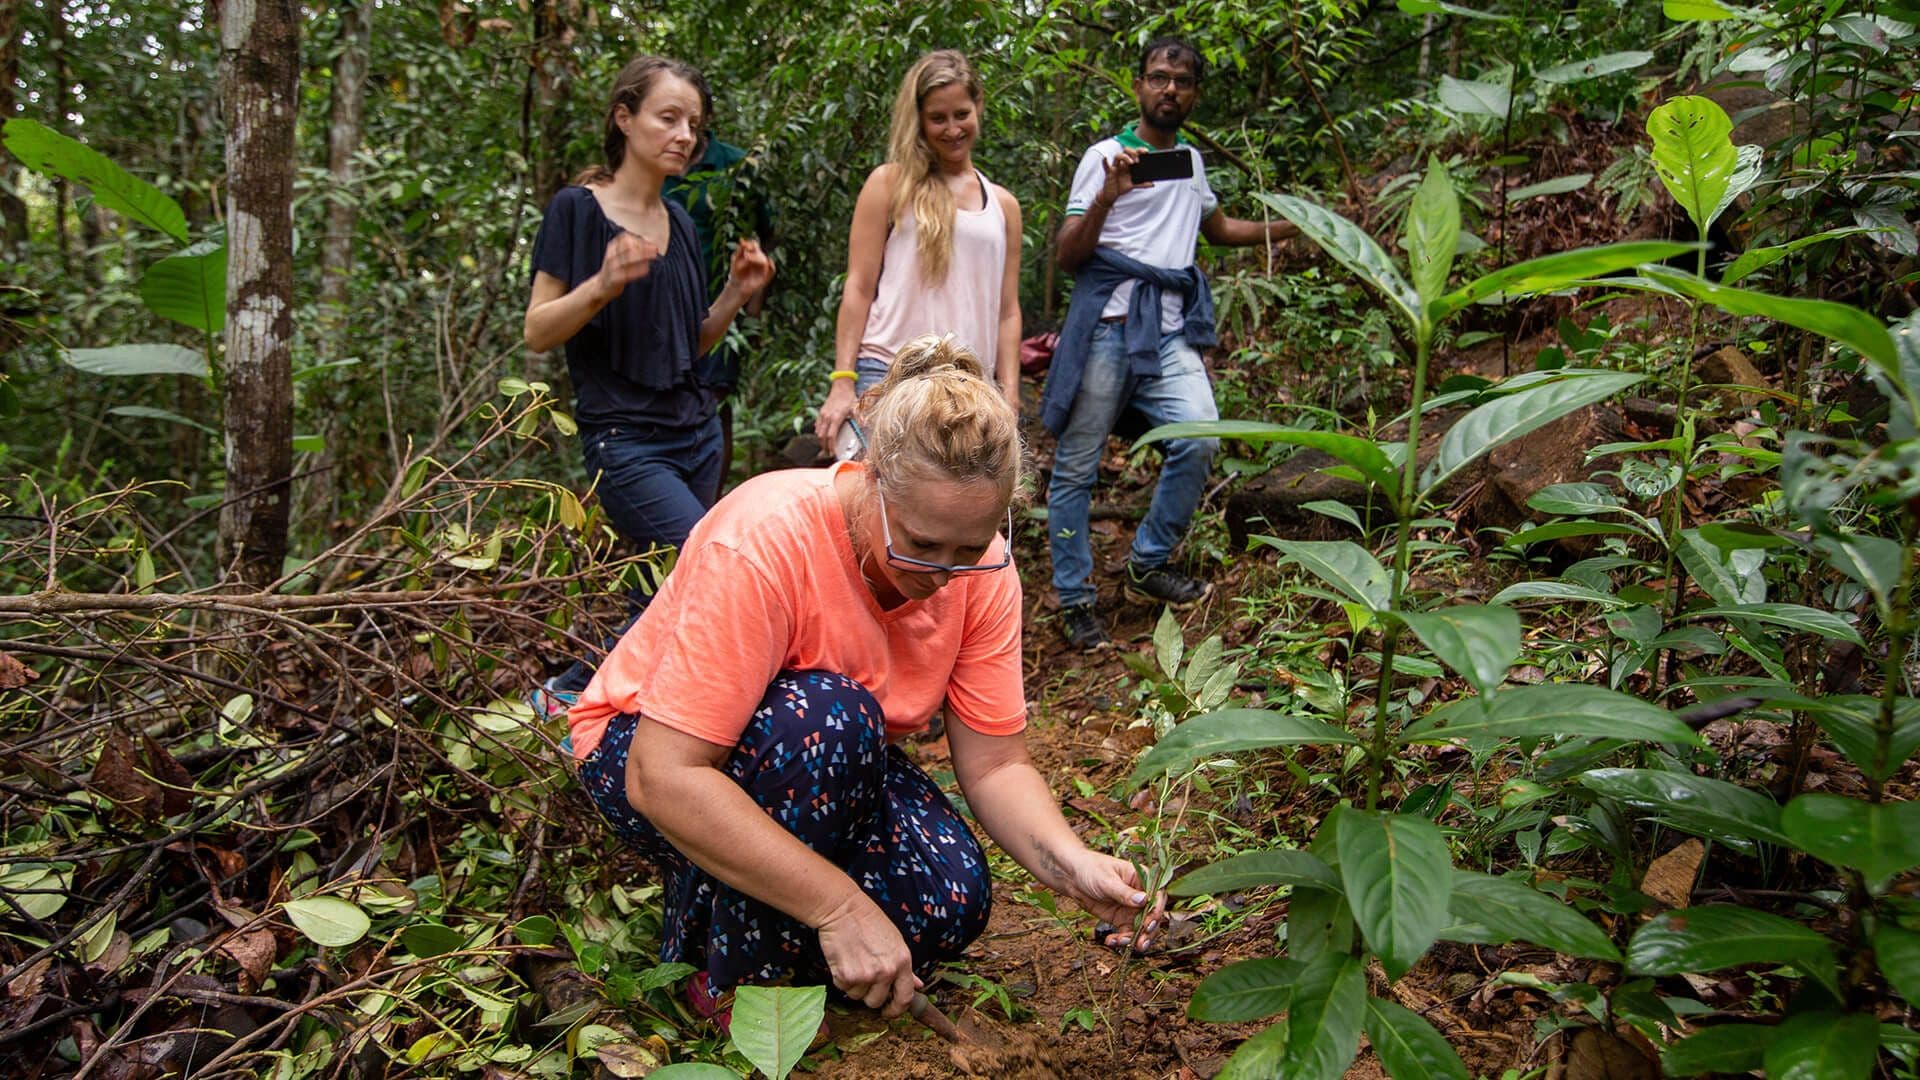 مجموعة من السائحين يستكشفون النباتات في غابة كانيليا في سريلانكا